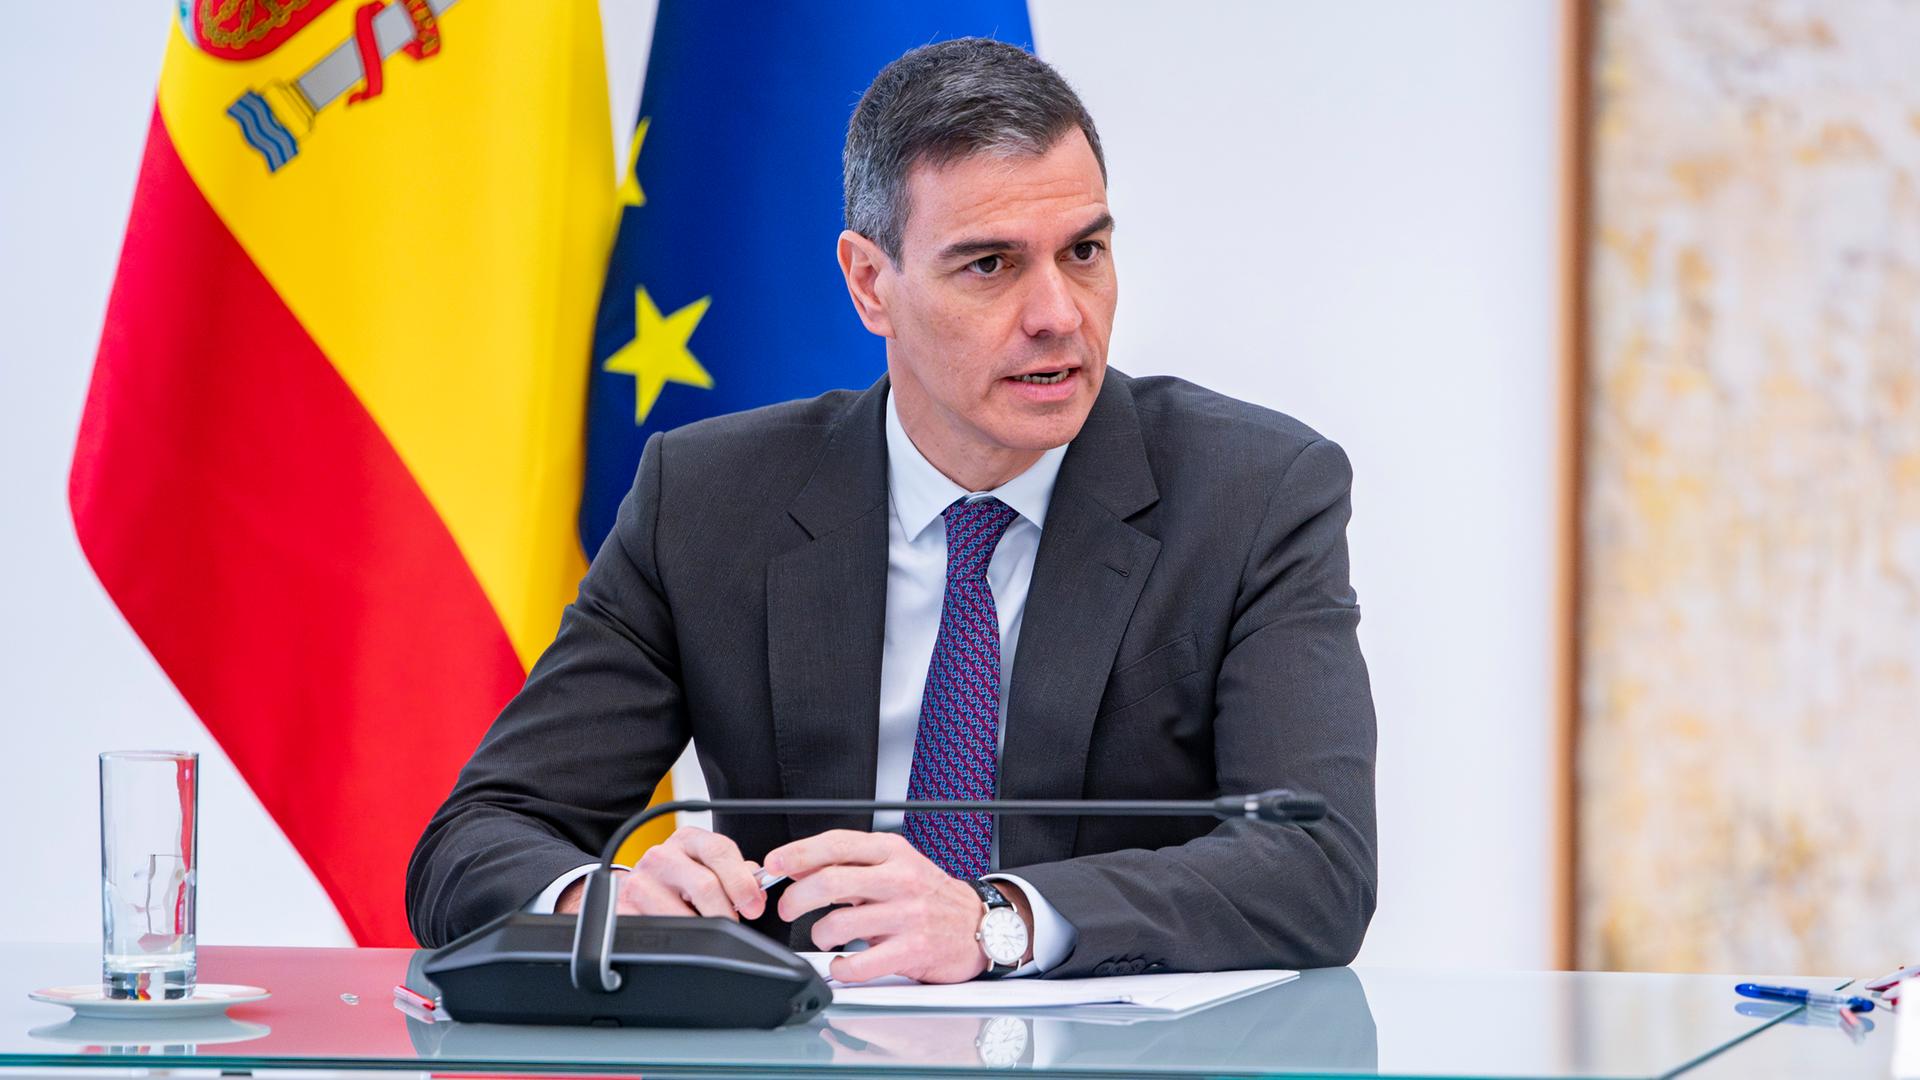 Der spanische Premierminister Pedro Sánchez steht in Anzug und Krawatte vor einem Rednerpult und spricht in ein Mikrofon.